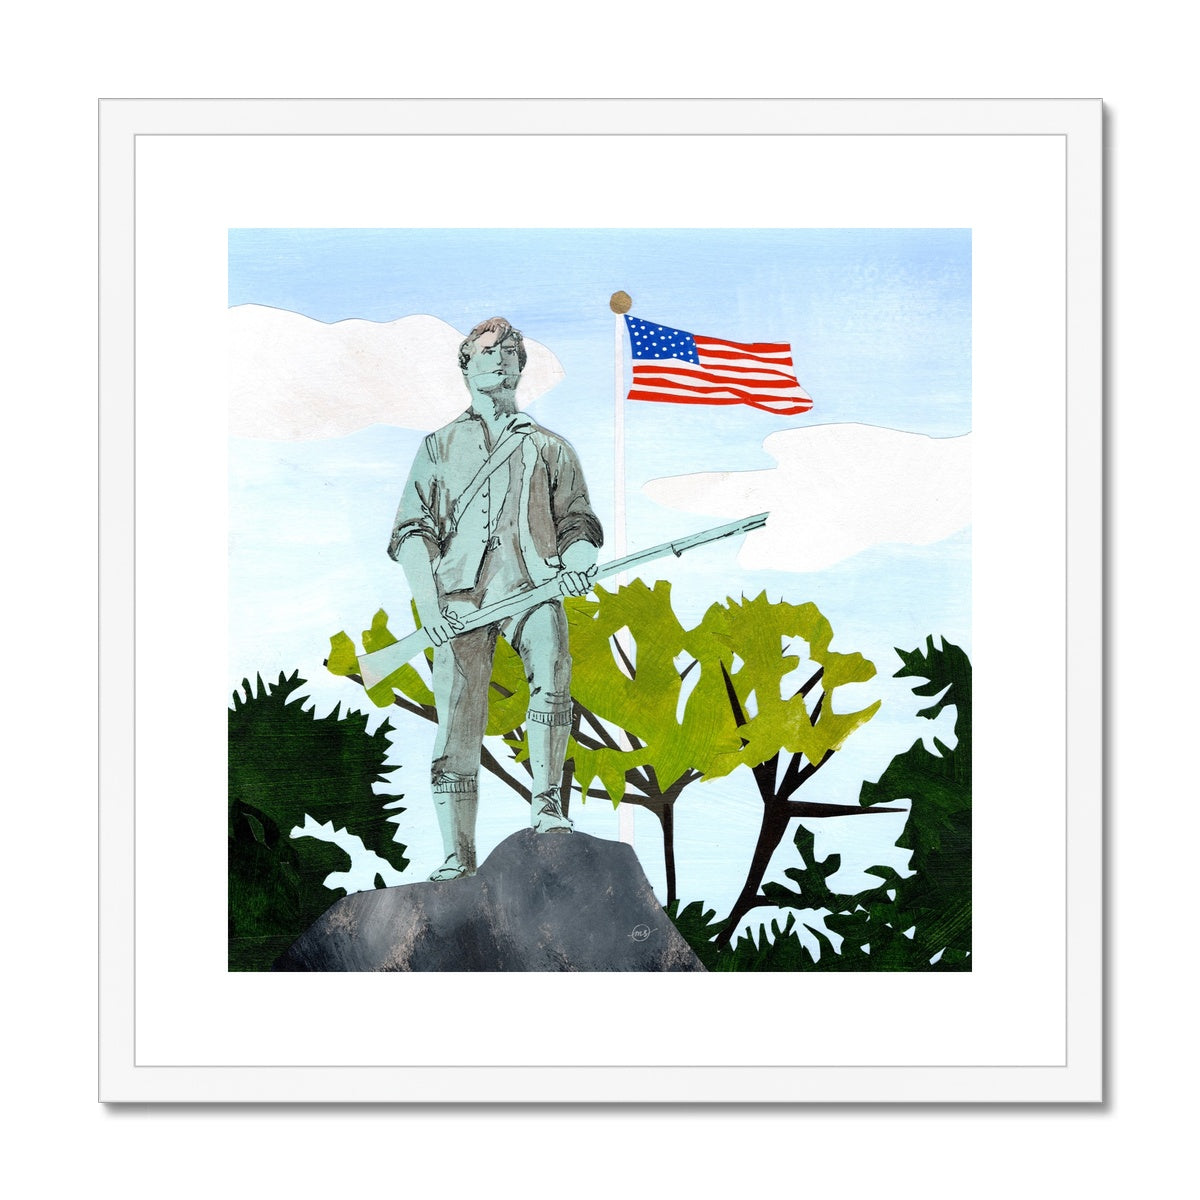 Lexington Minuteman Framed & Matted Print